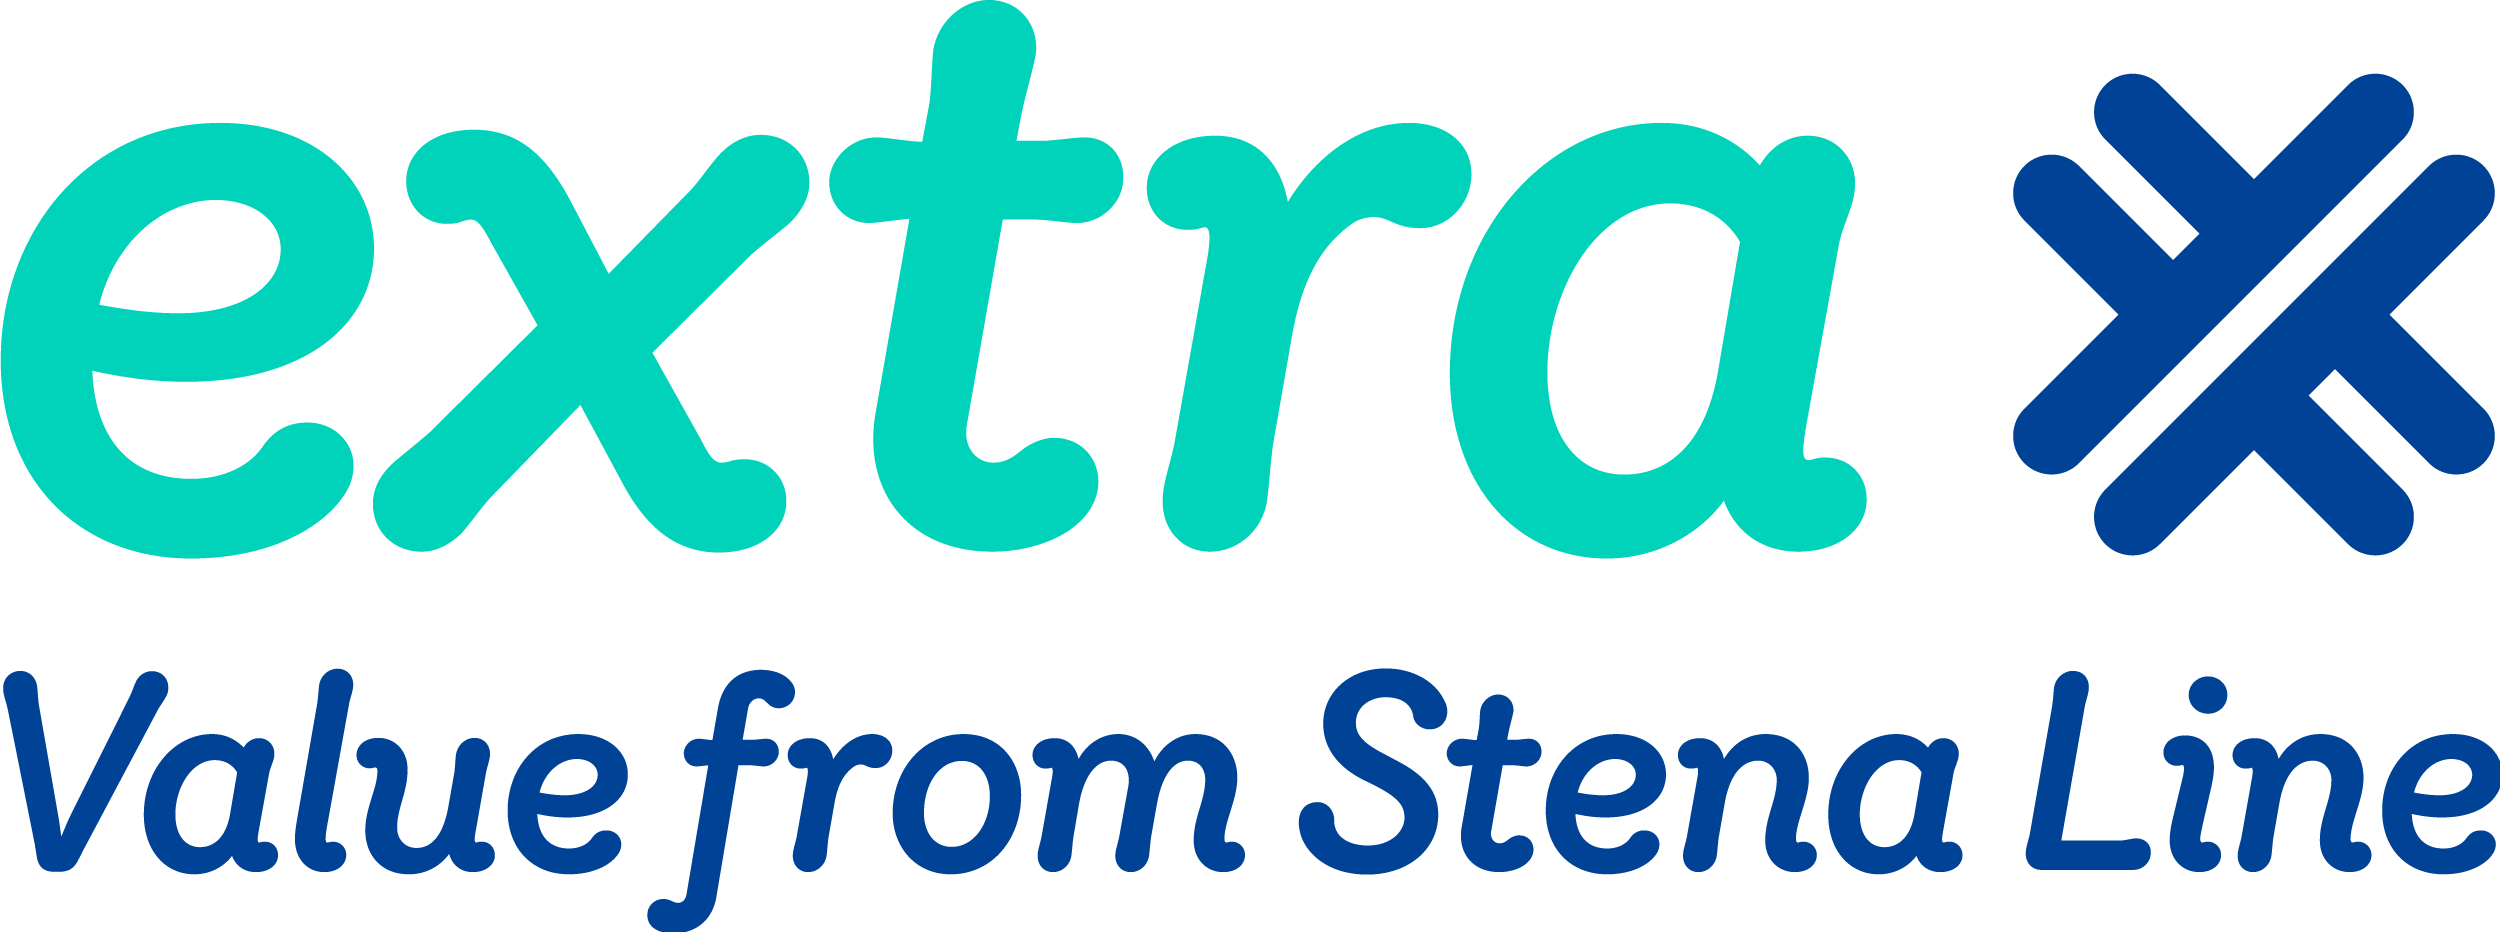 Logo voor het Stena Line-lidmaatschap genaamd "Extra".